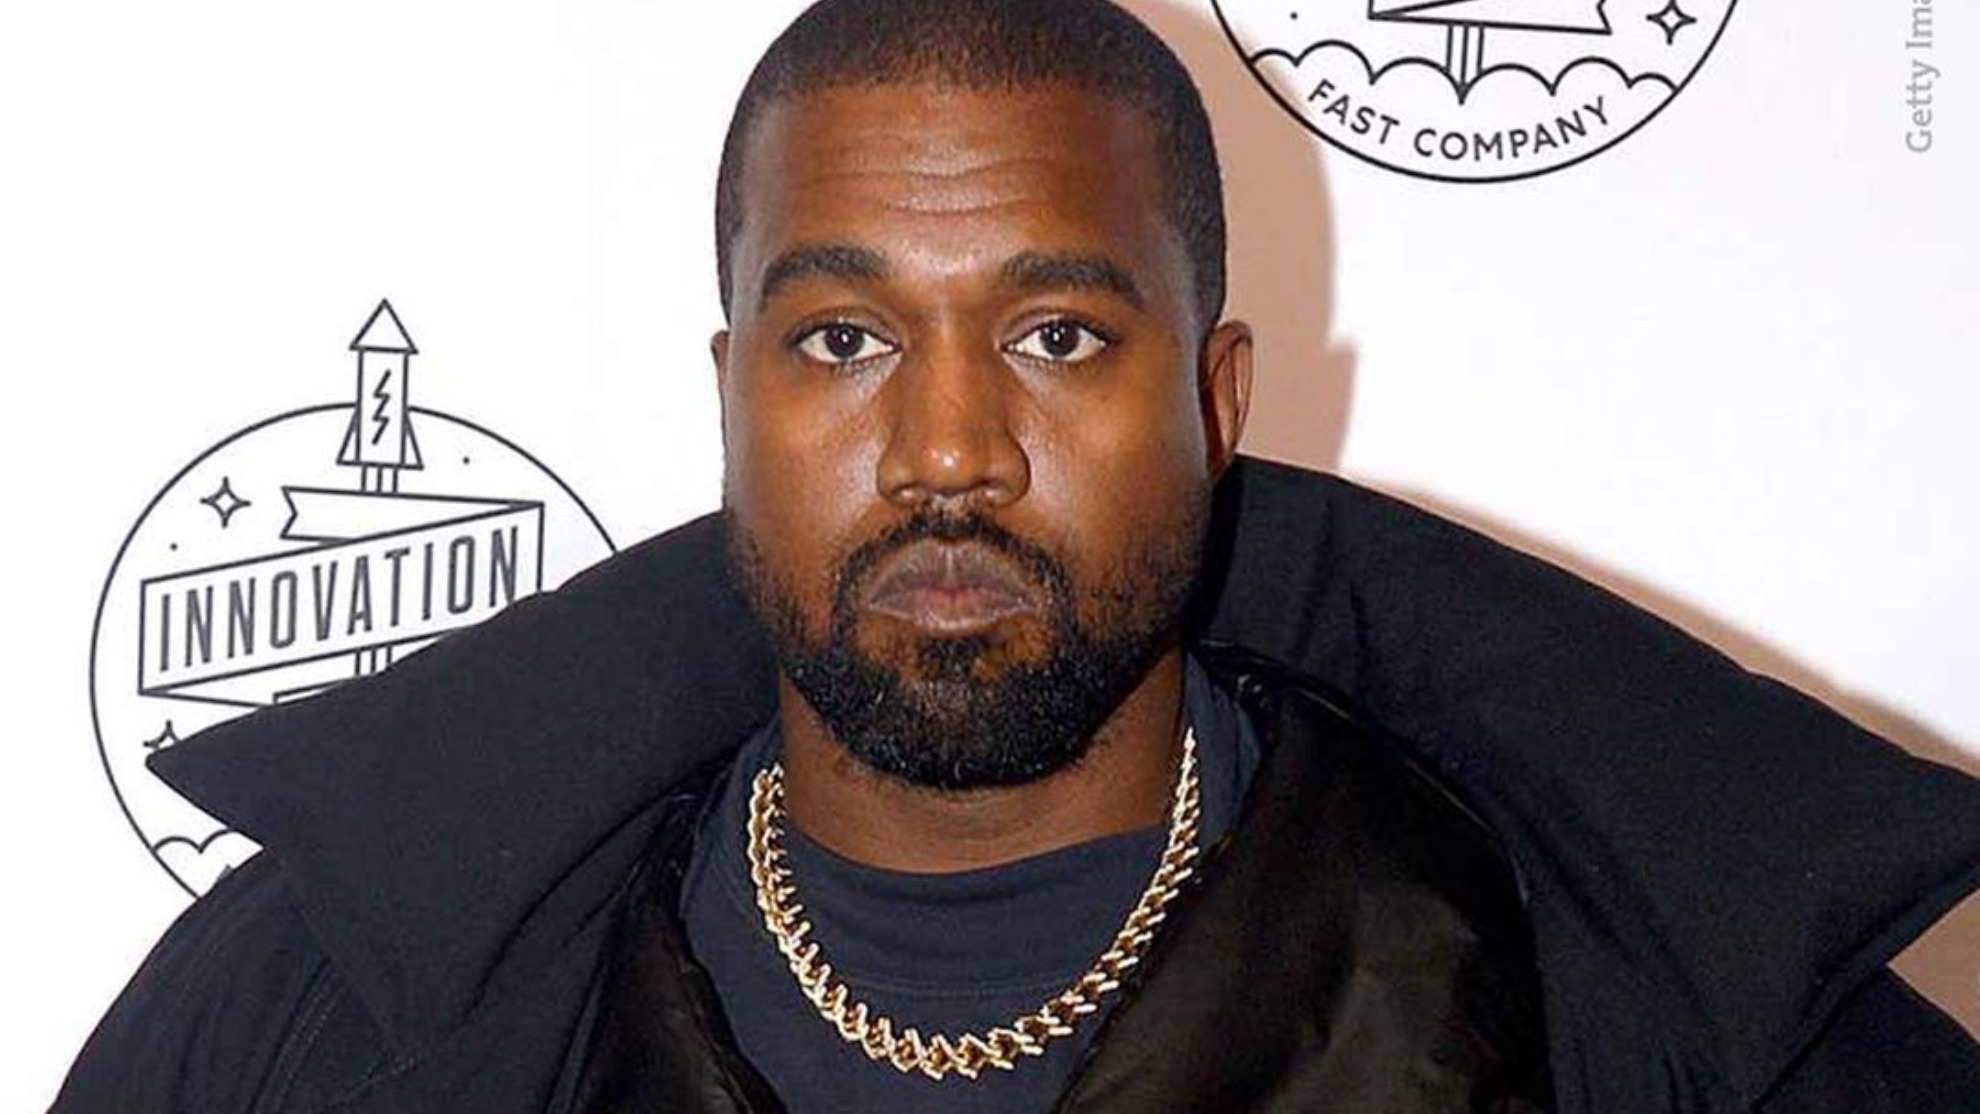 Kanye West de ser el abandono de Adidas | Marcausa